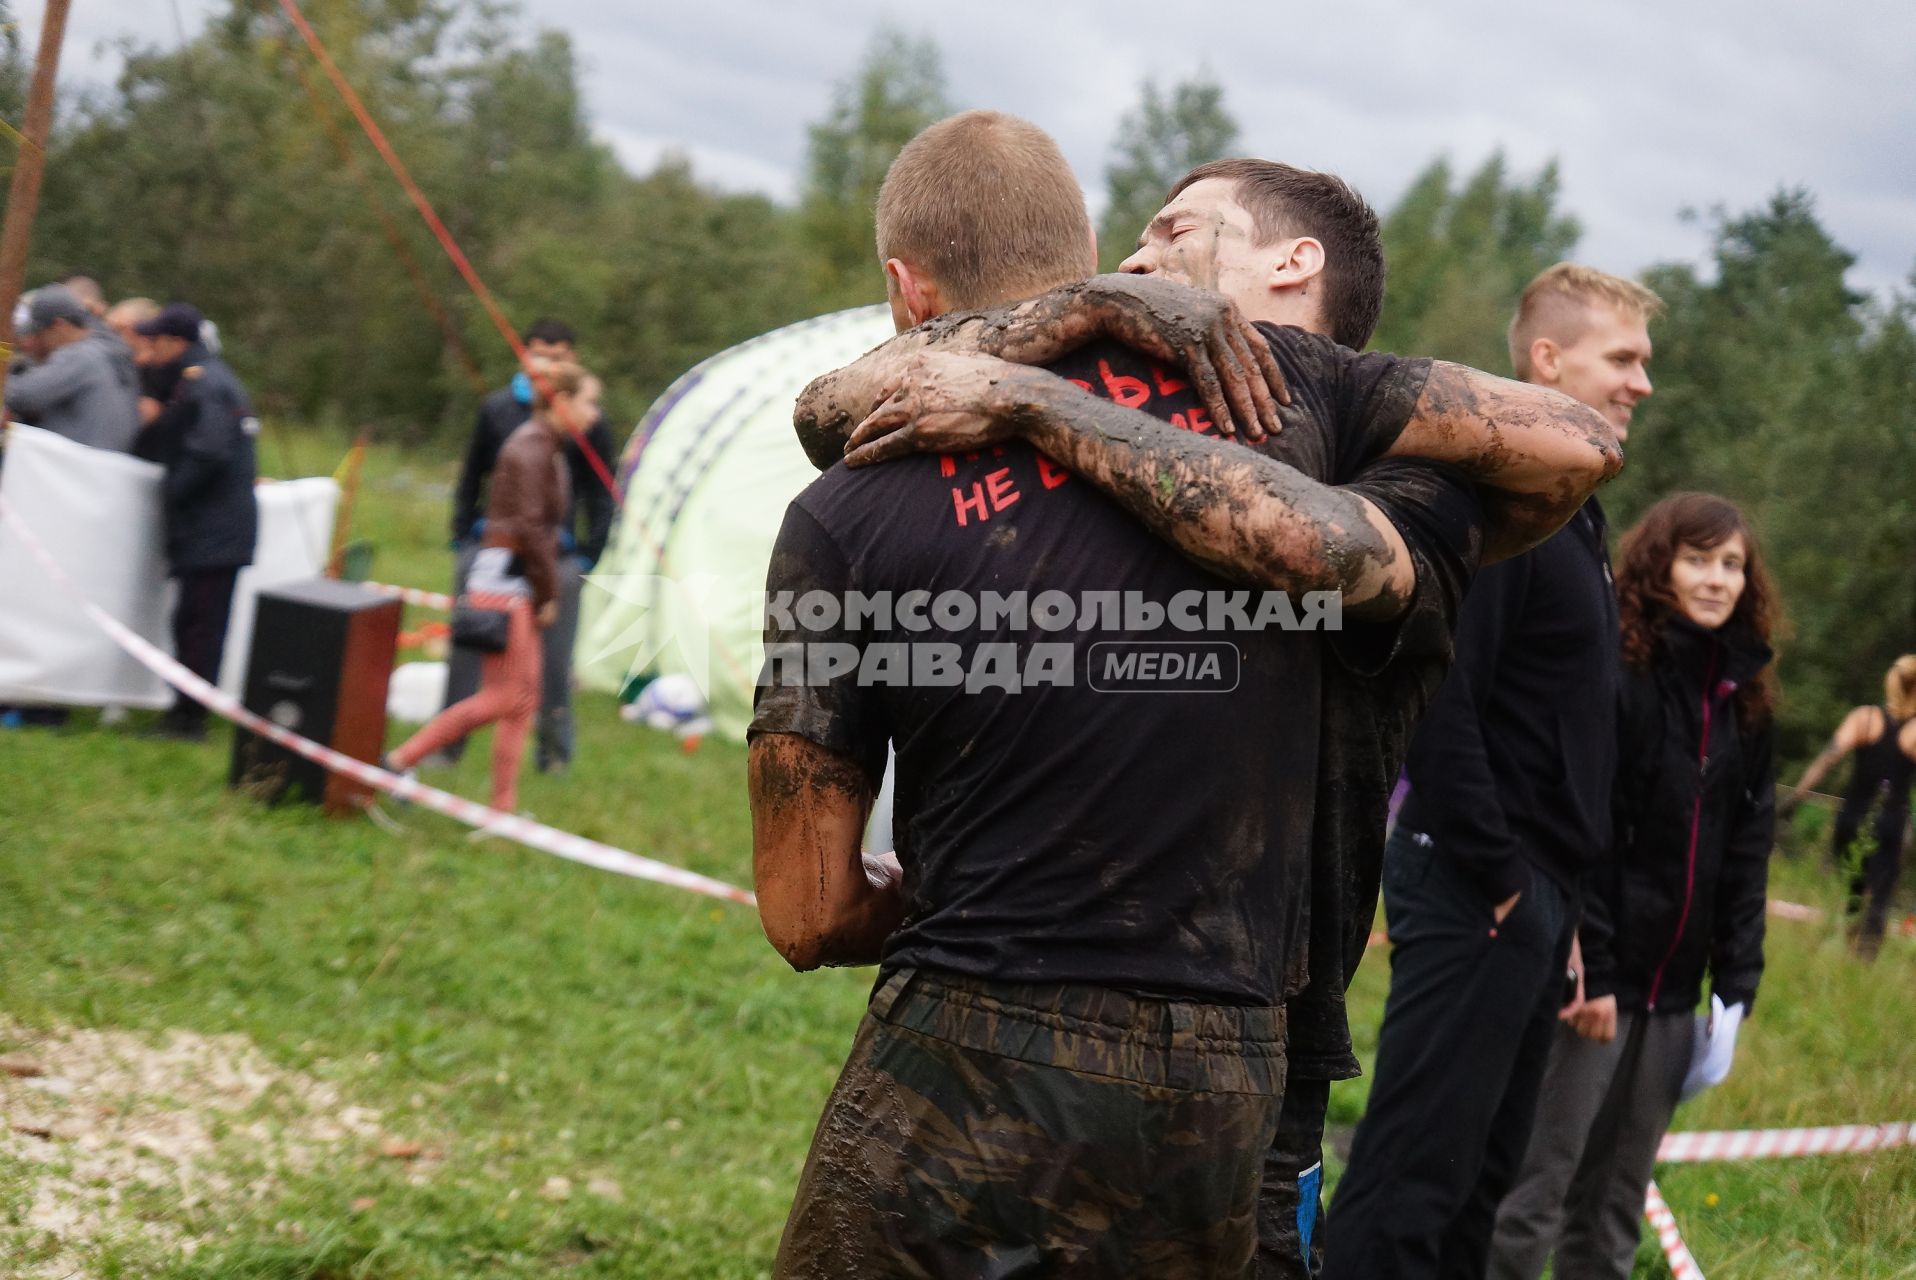 Участники грязных гонок Ural Dirty Race 2014 под Екатеринбургом  радуются на финише